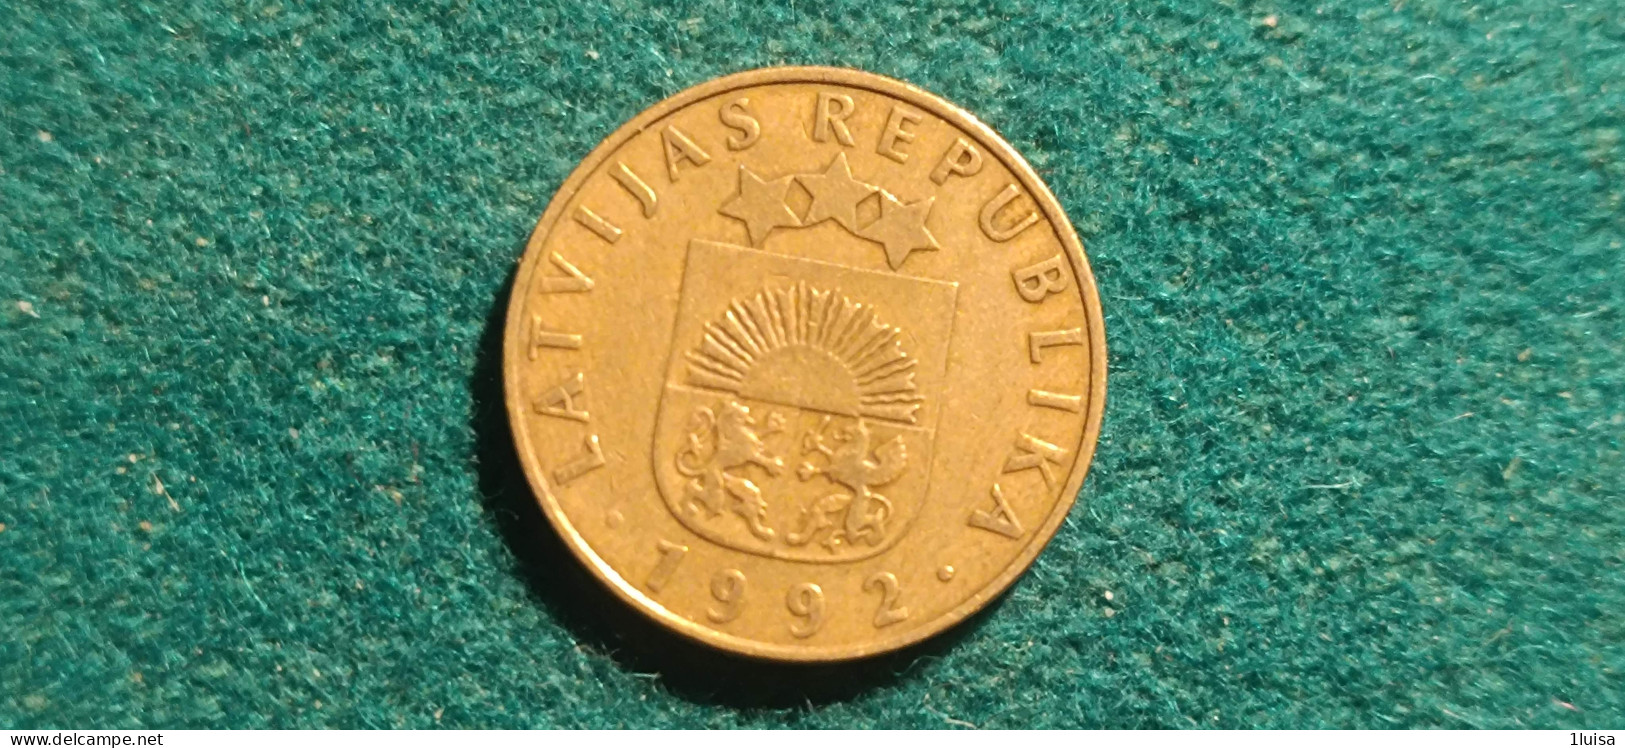 LITUANIA 20 SANTIMU 1992 - Lituanie